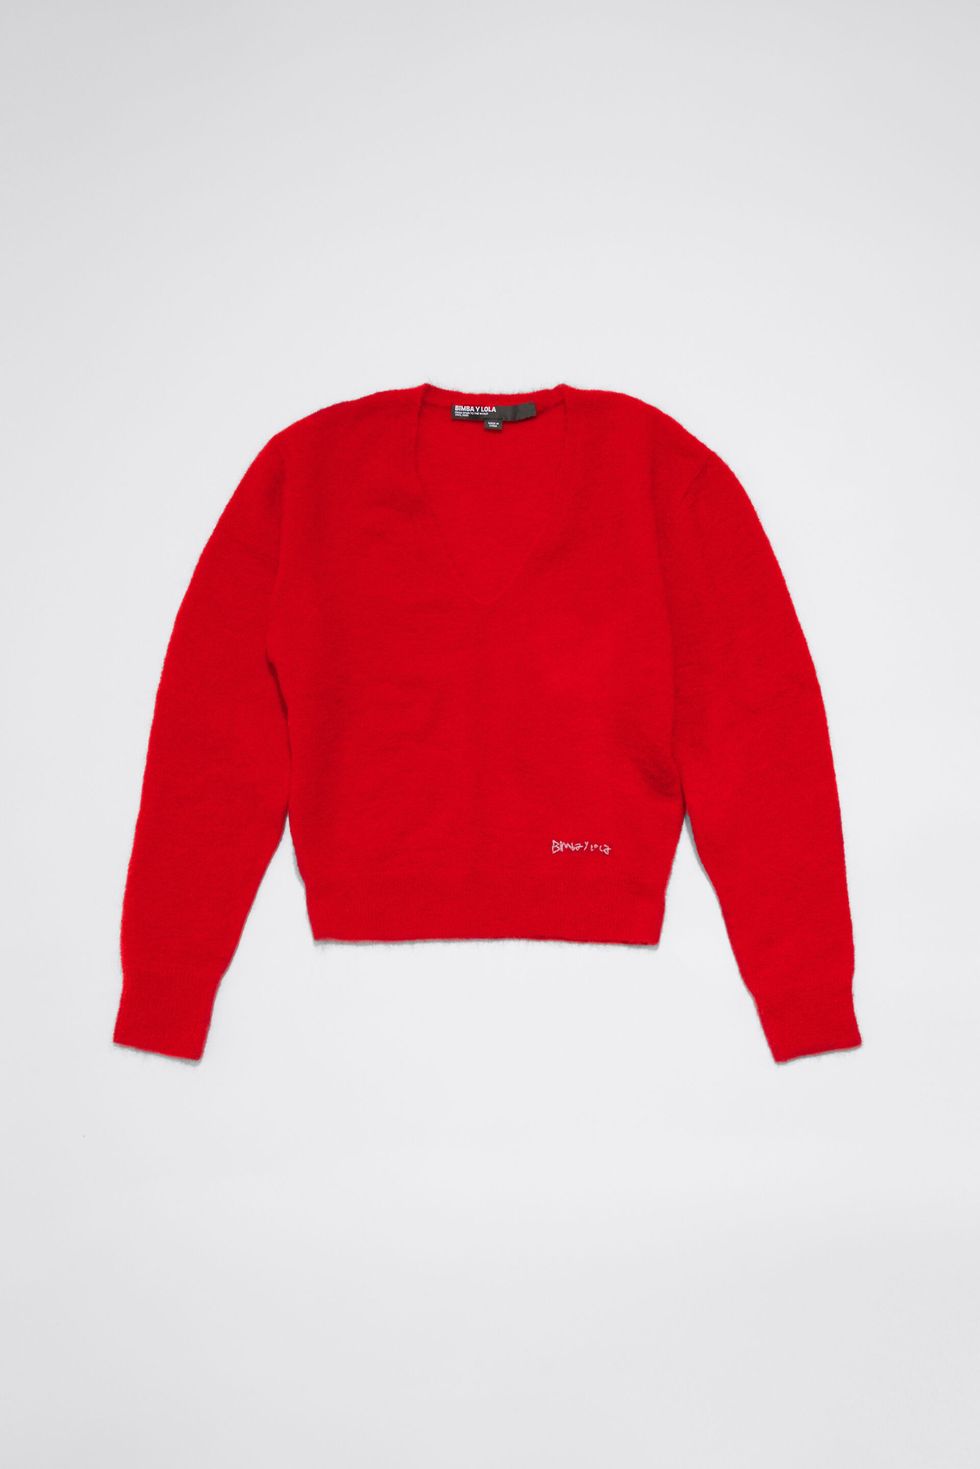 Los cinco jerséis rojos más bonitos para llevar el color de la temporada